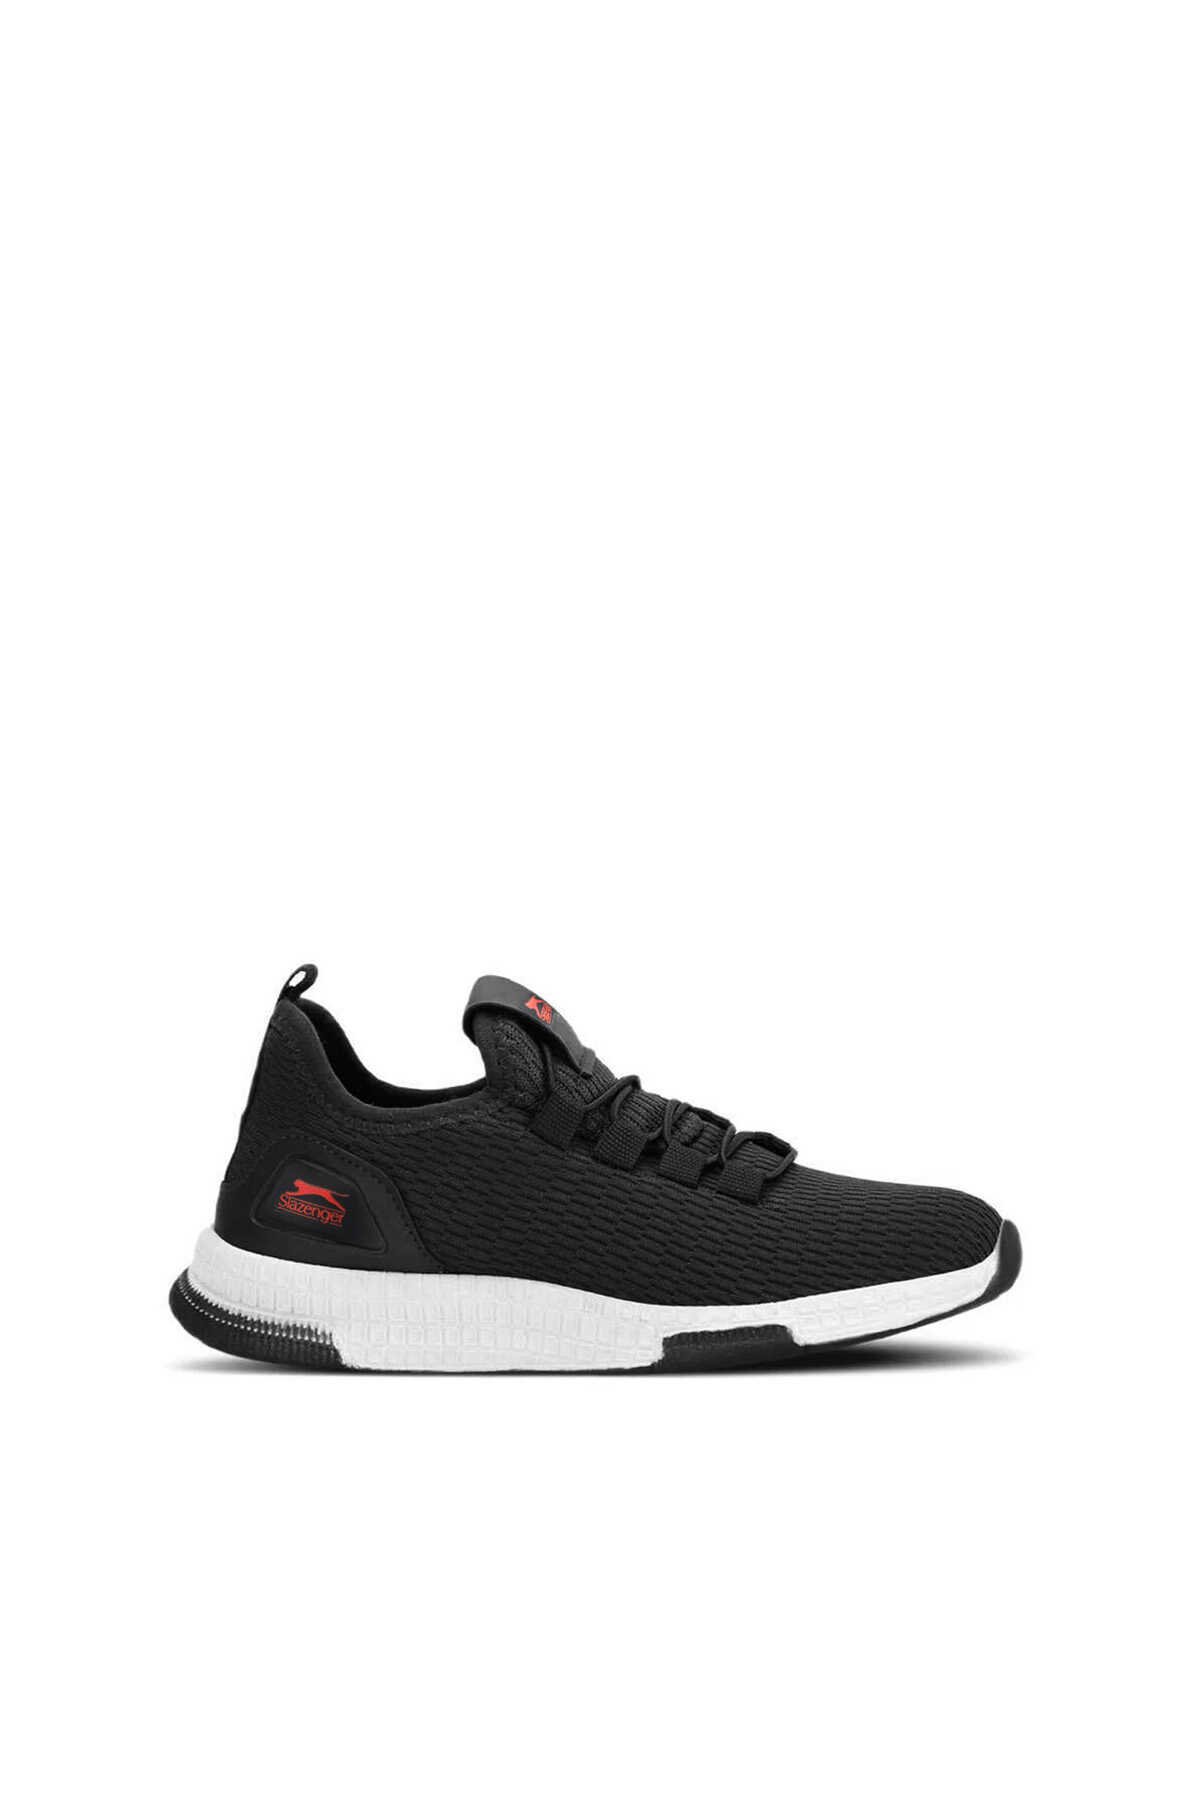 Slazenger - Slazenger ABENA I Sneaker Unisex Çocuk Ayakkabı Siyah / Kırmızı